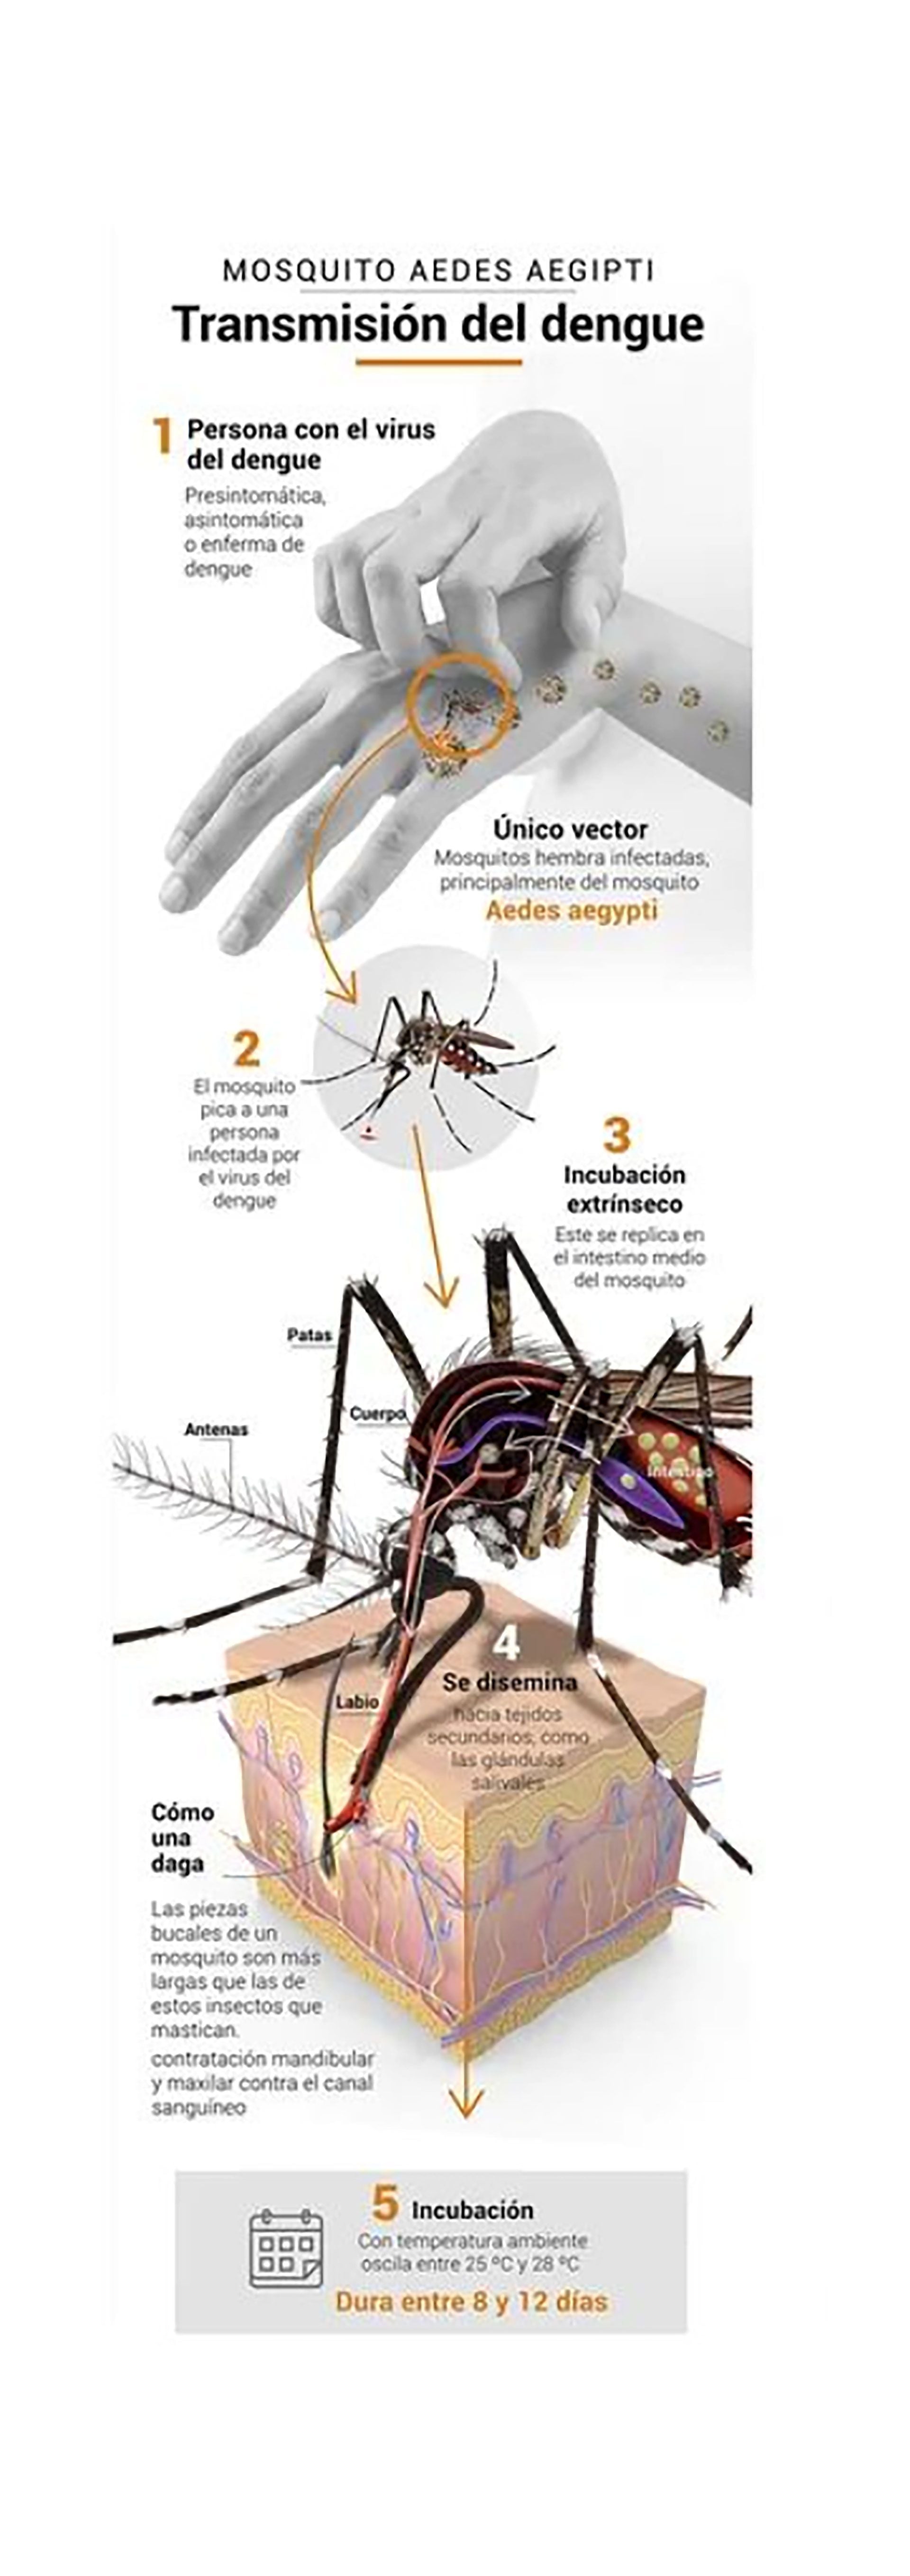 El hábitat del mosquito Aedes aegypti está cambiando, extendiéndose a nuevas áreas, incluidas altitudes y regiones previamente no afectadas  (infografía Marcelo Regalado)